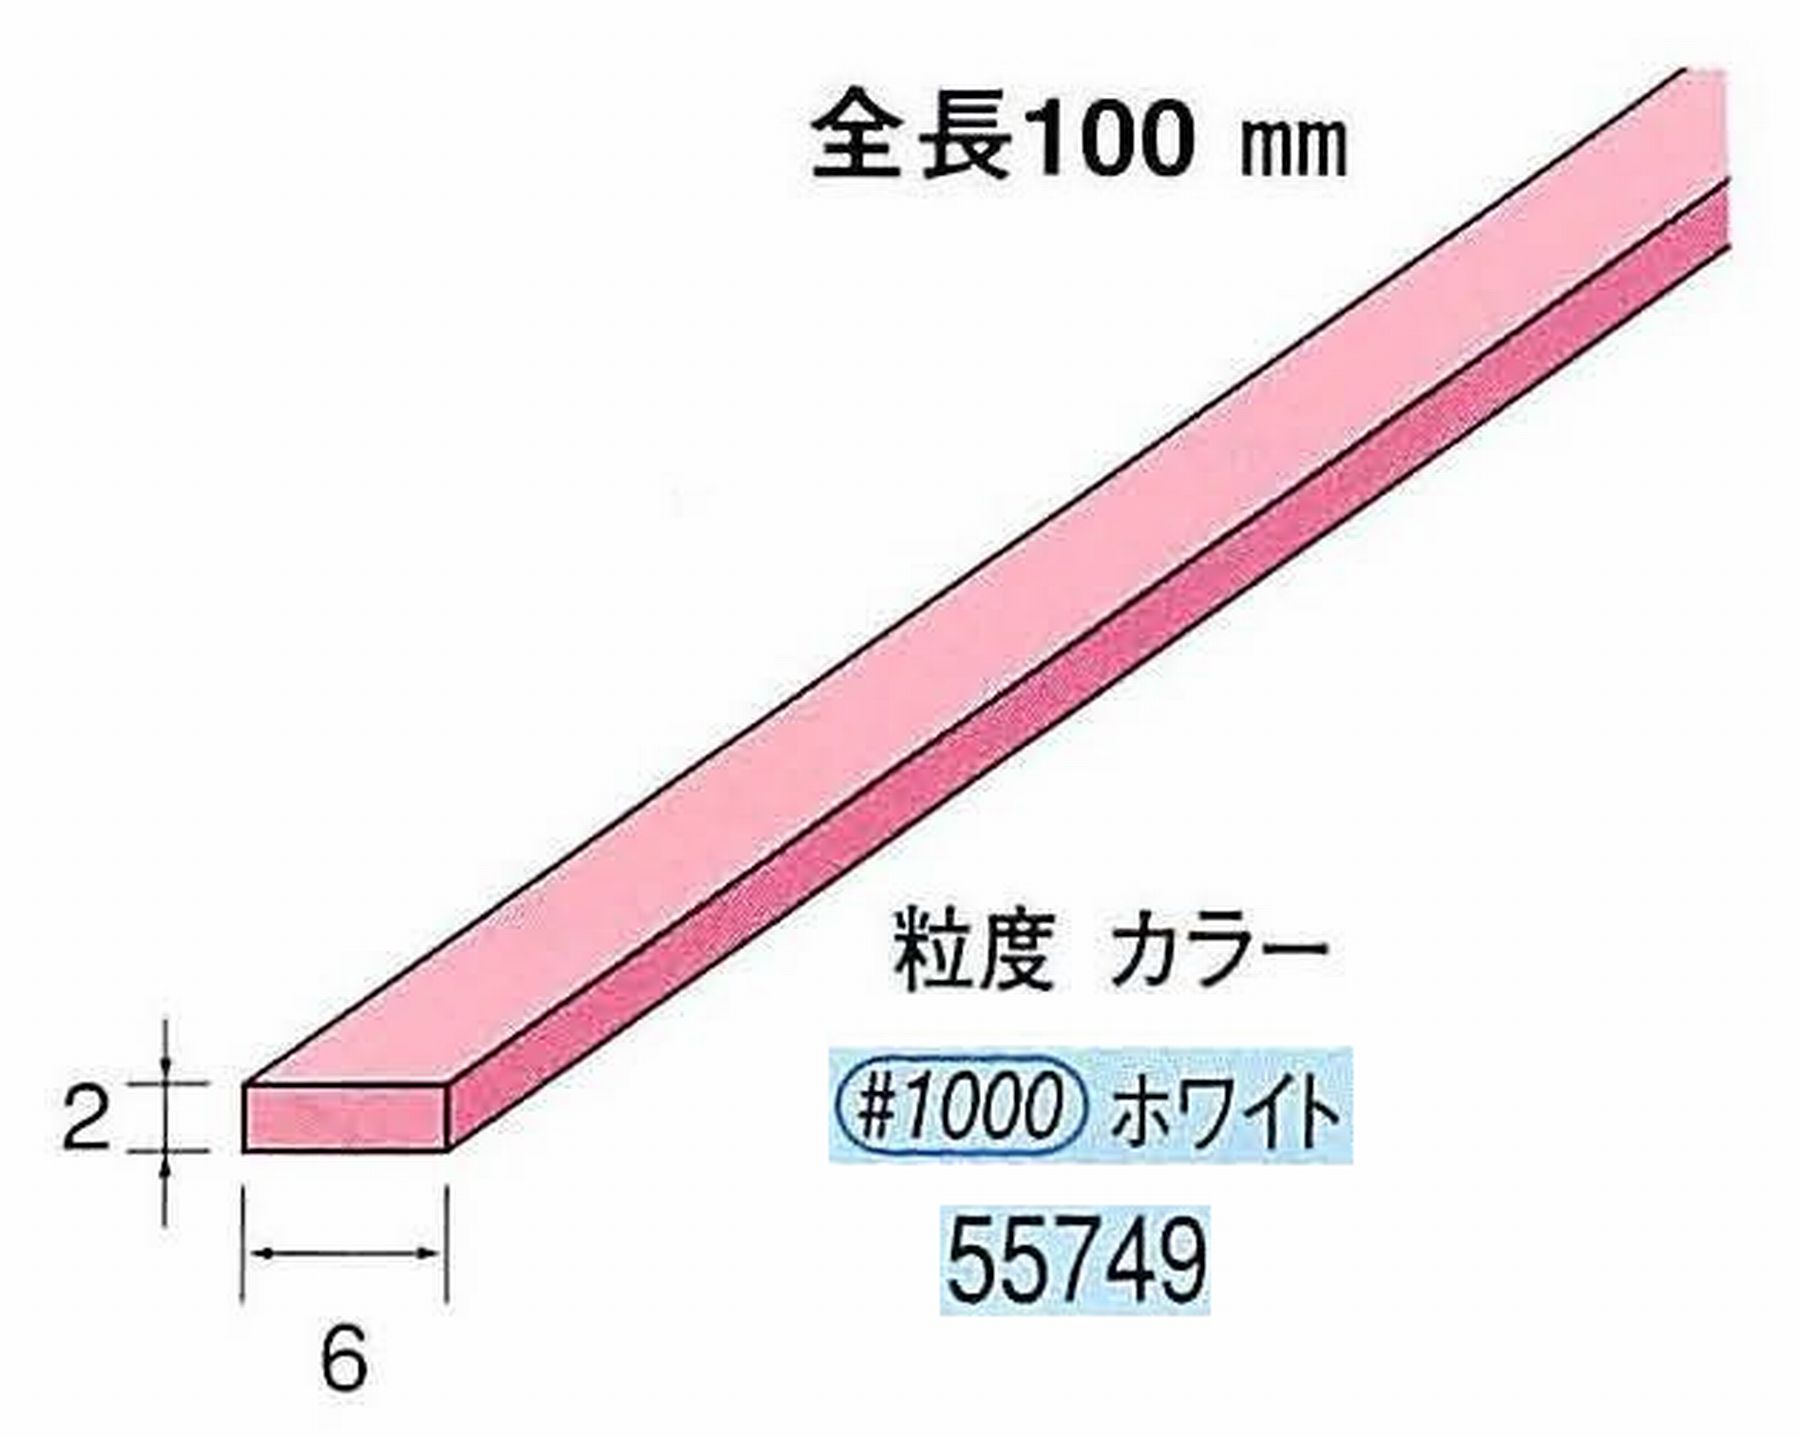 ナカニシ/NAKANISHI セラファイバー砥石 全長100mm ホワイト 55749